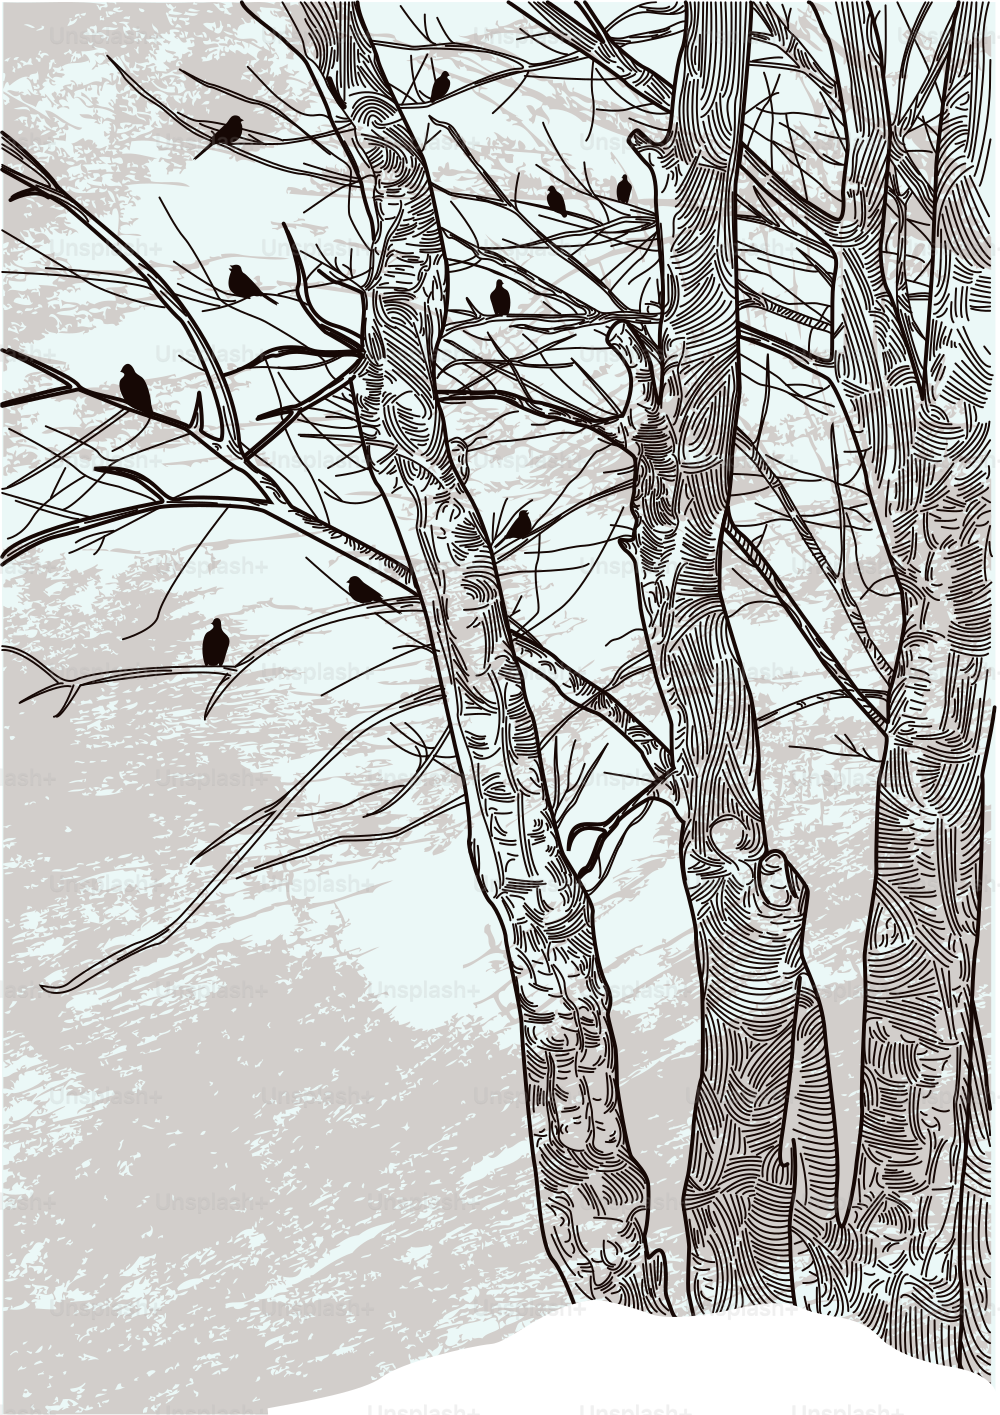 Uma ilustração atualizada de algumas árvores de inverno estéreis.